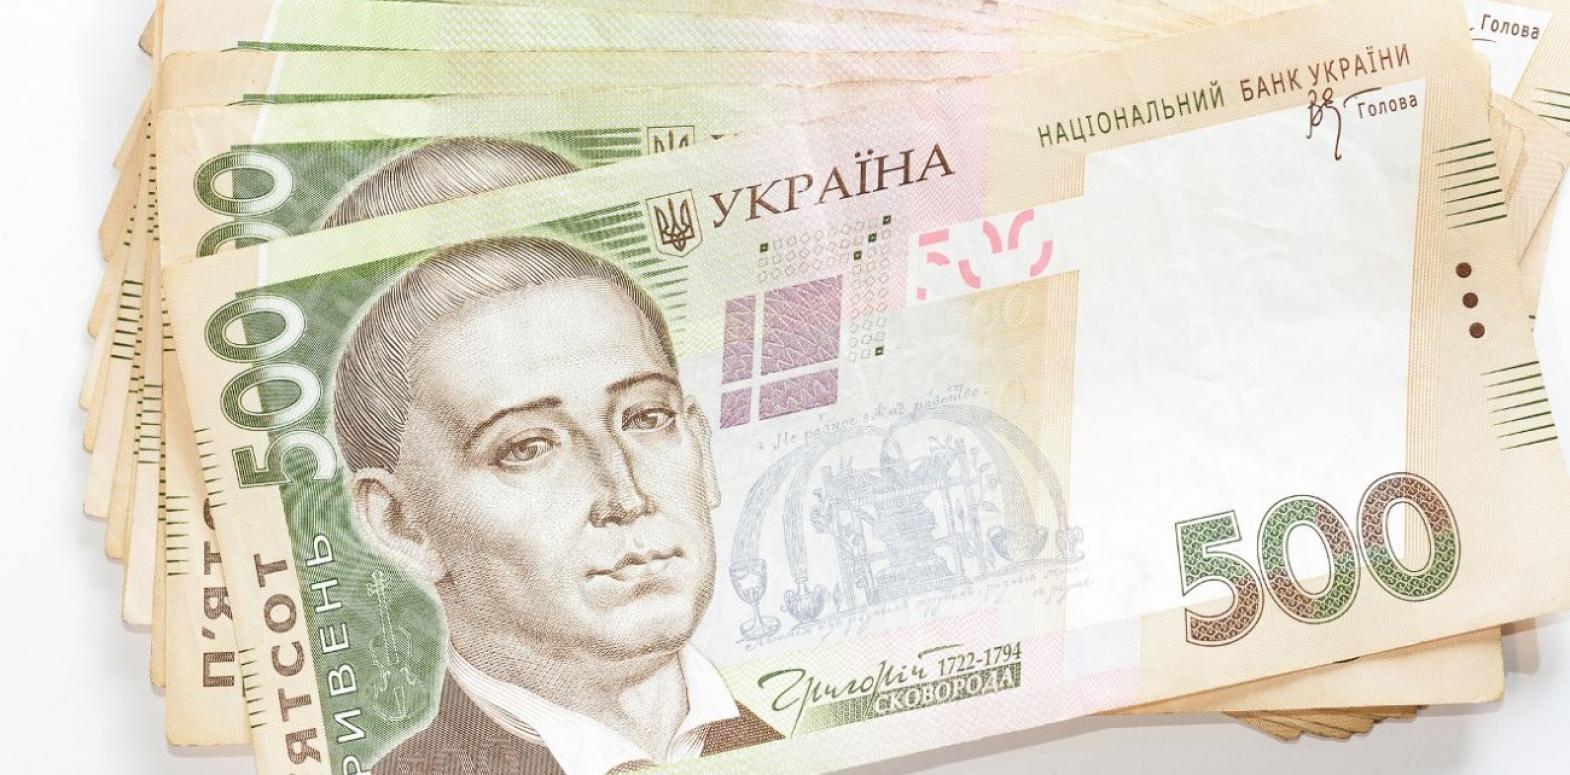 Рейтинг банков: где больше всего денег украинцев